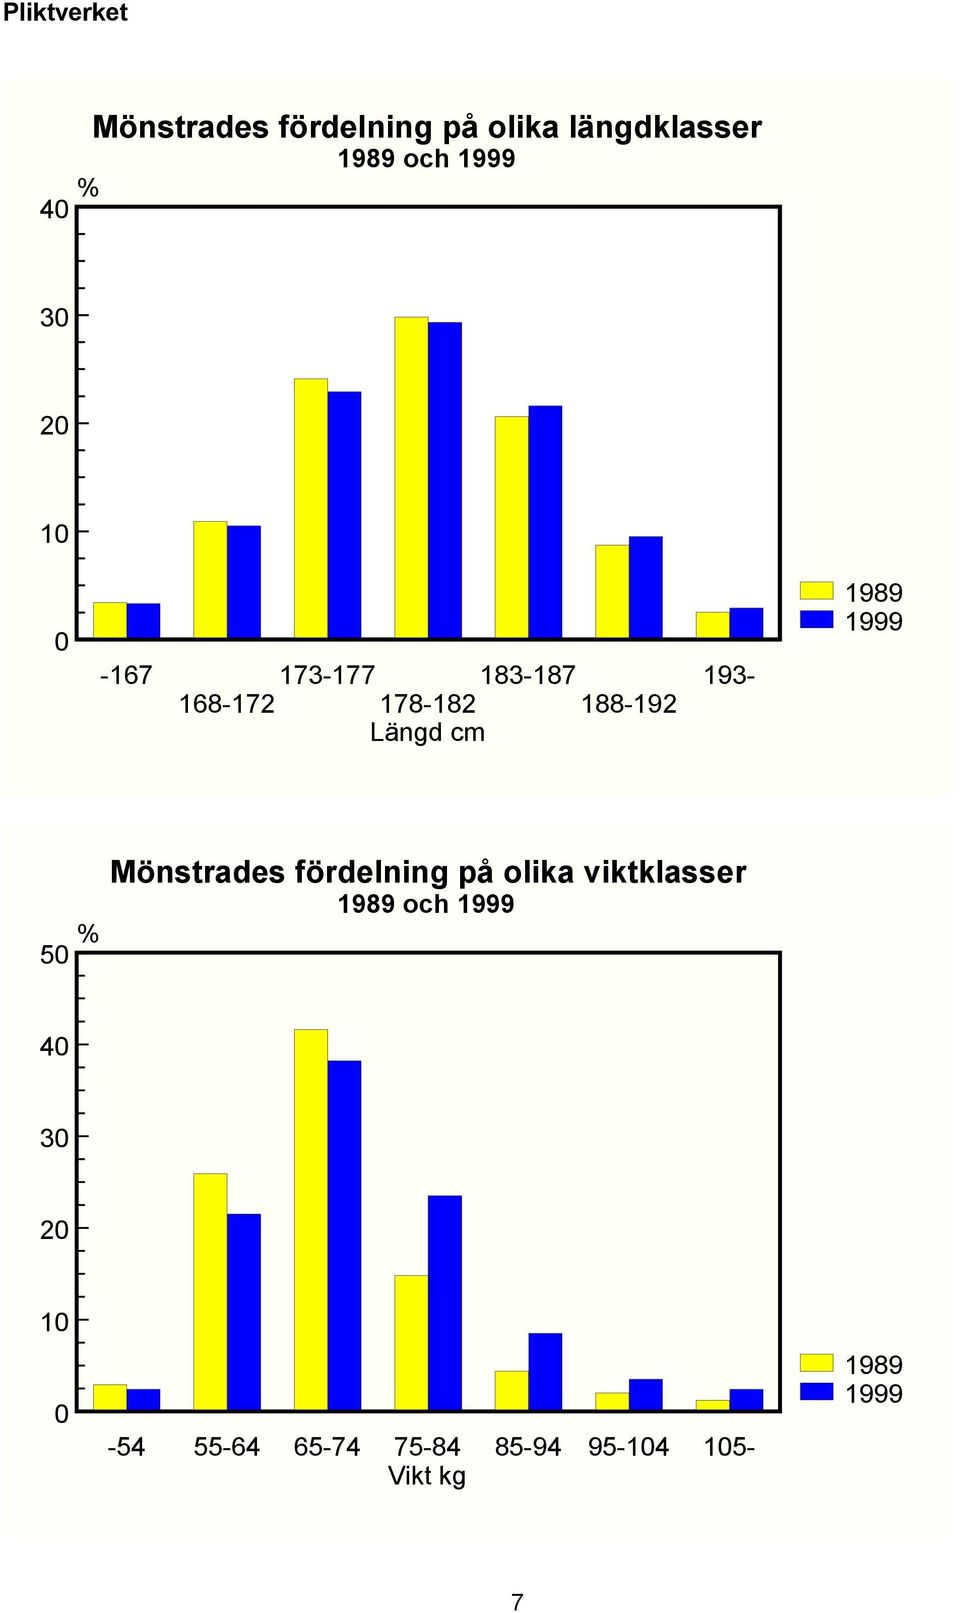 1999 50 Mönstrades fördelning på olika viktklasser 1989 och 1999 40